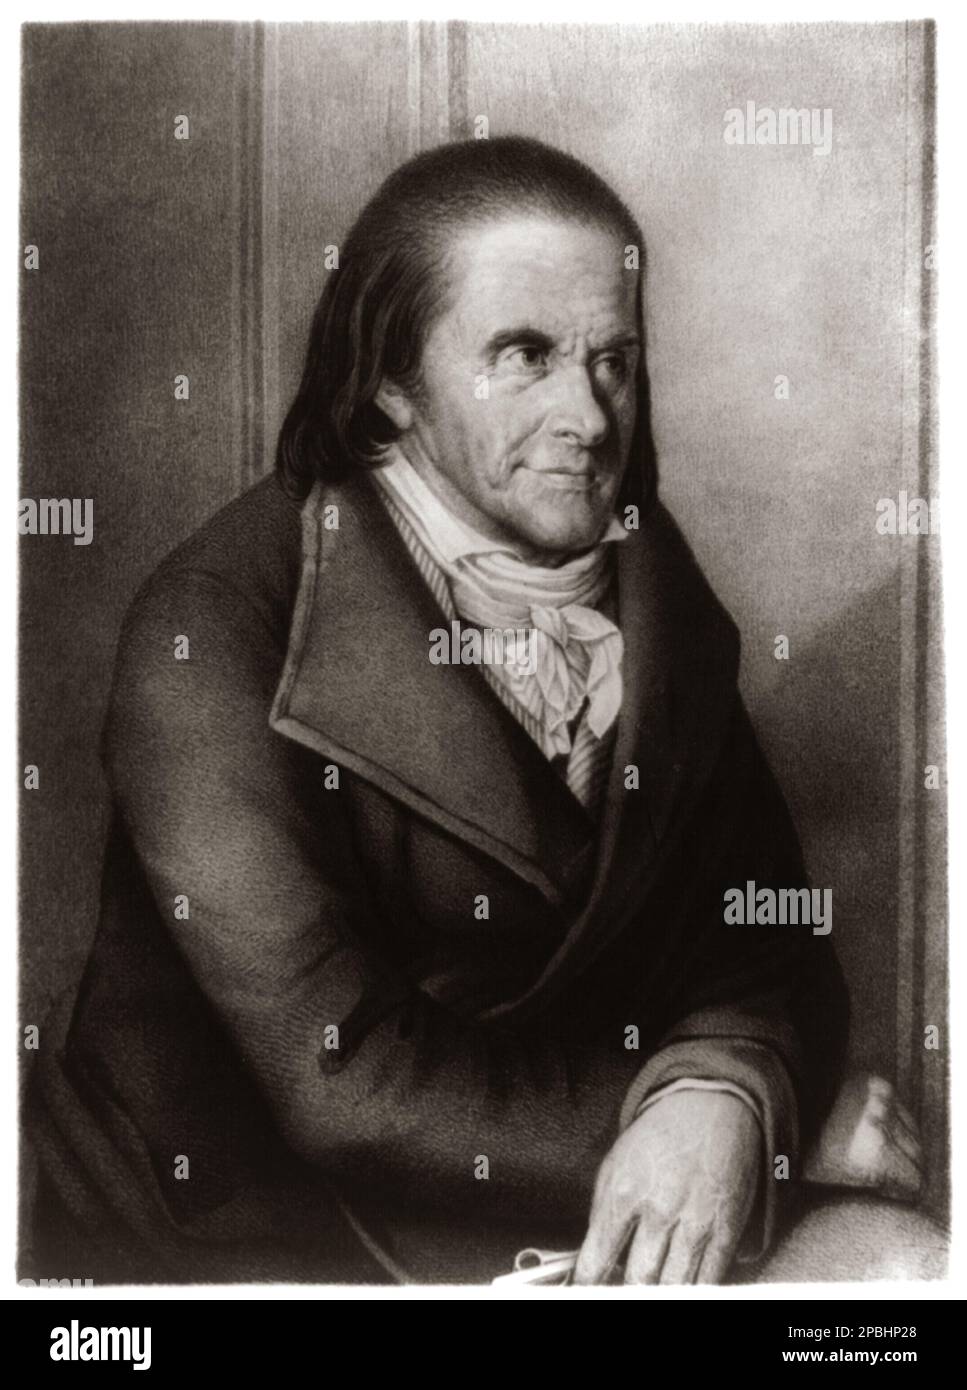 Johann Heinrich PESTALOZZI (1746 – 1827) War eine Schweizer Pädagoge und pädagogischer Reformer.- foto Storiche - foto Storica - GESCHICHTSFOTO - Portrait - Rituto - PEDAGOGIA - PEDAGOGO - EDUCATORE - EDUCAZIONE - Halsband - colletto - Krawatte - Cravatta Fiocco - Bogen - Schule - scuola - Gravur - Incisione -- Archivio GBB Stockfoto